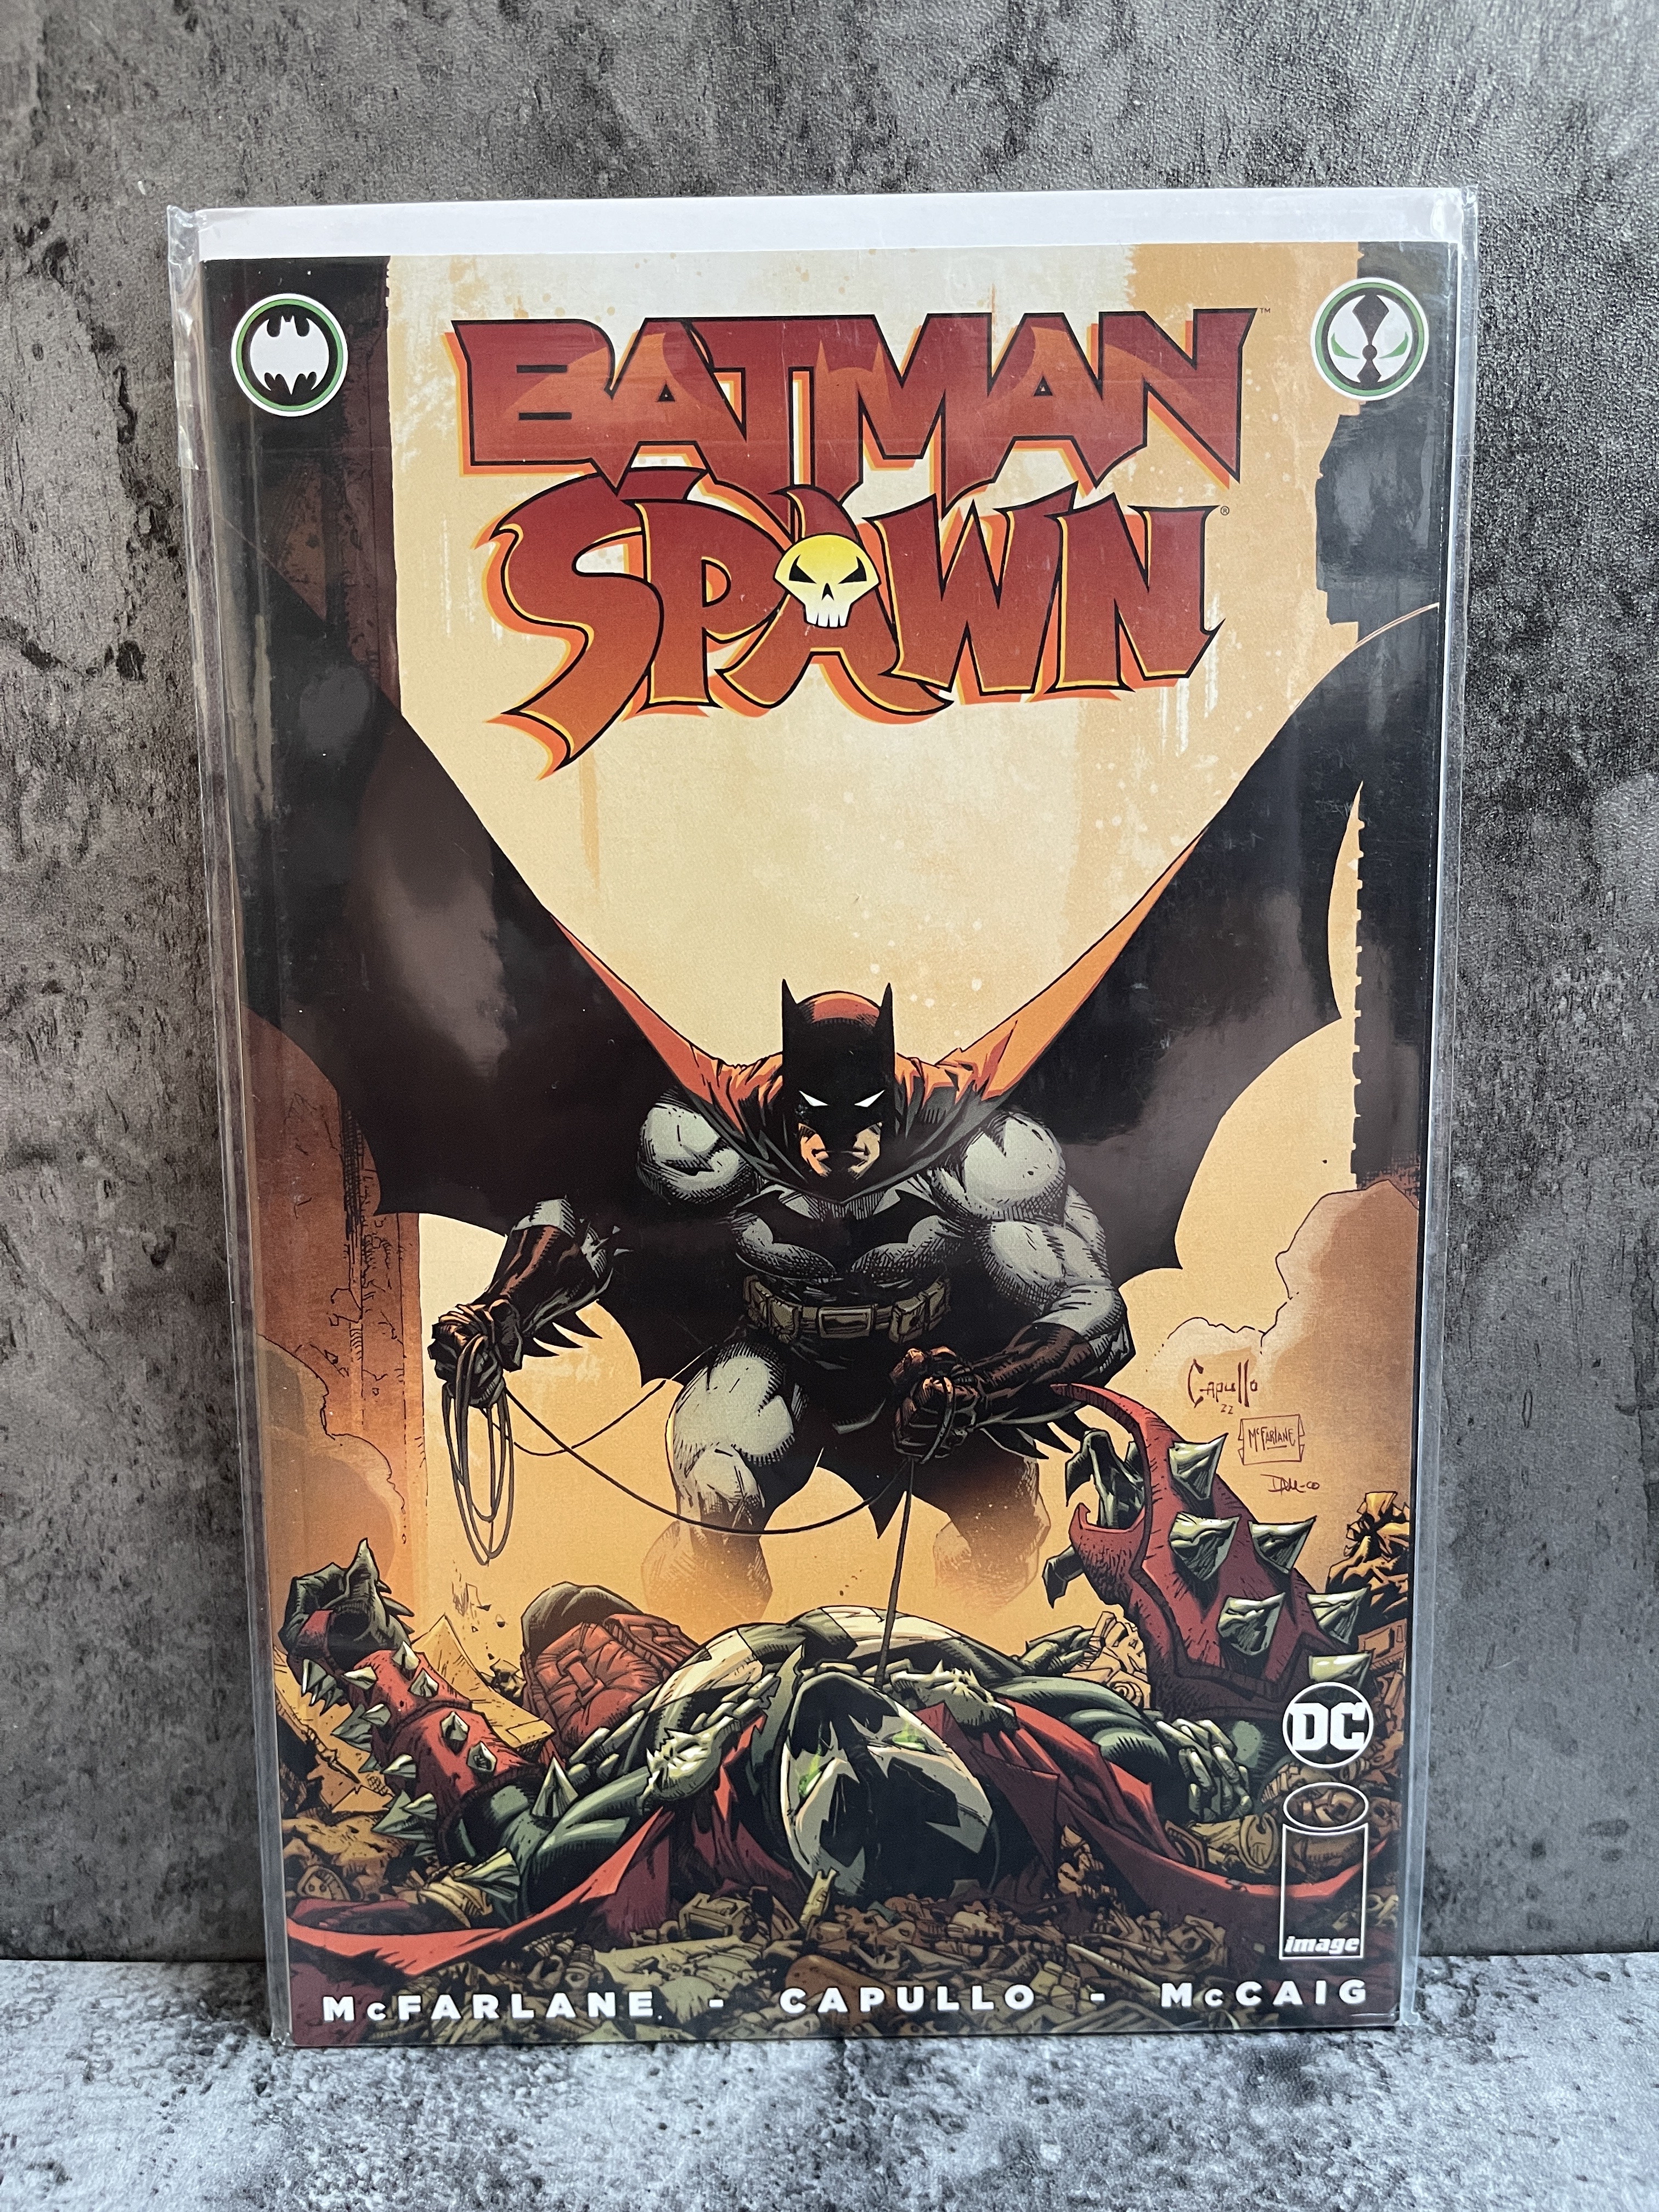 《本期全是好刊》美漫杂志海报刊物限定变体可评cgc再生侠spawn蝙蝠侠联名刊